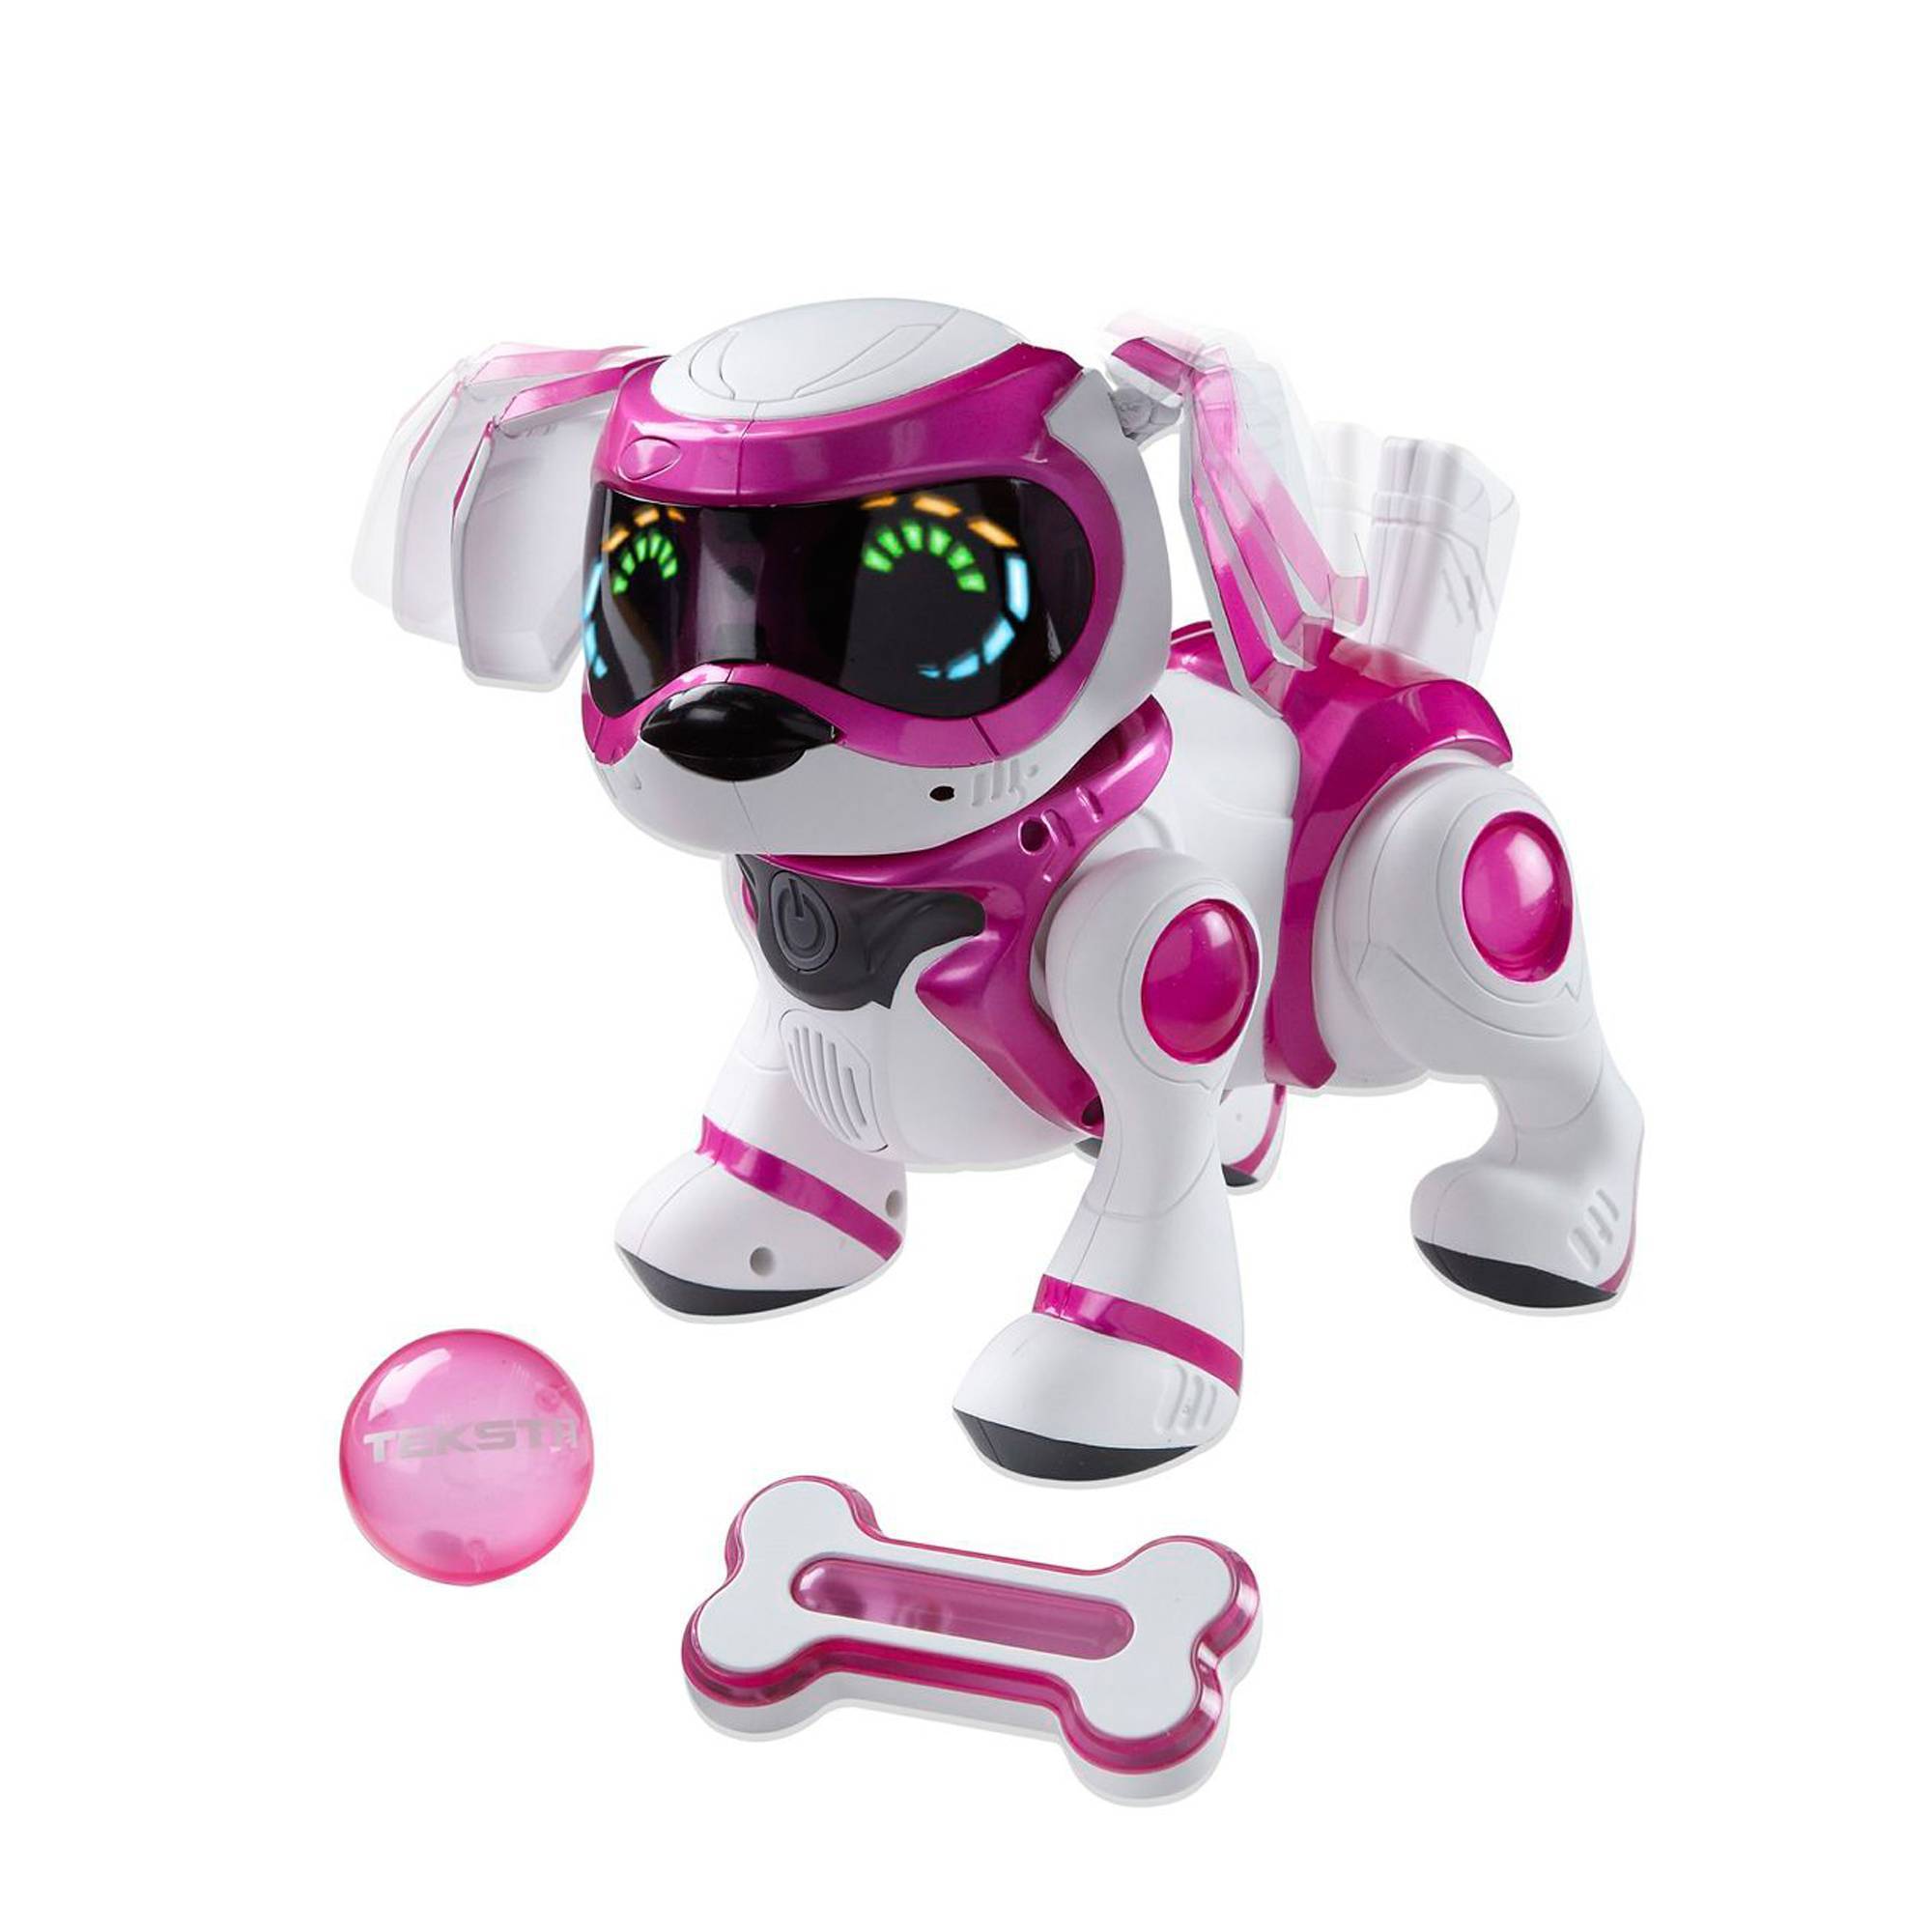 Включи радио для собак. Интерактивная собака teksta - Puppy с аксессуарами, Manley Toys (68377). Интерактивная собака teksta - Puppy. Интерактивная игрушка Manley Toys. Teksta Robotic Puppy 5g.